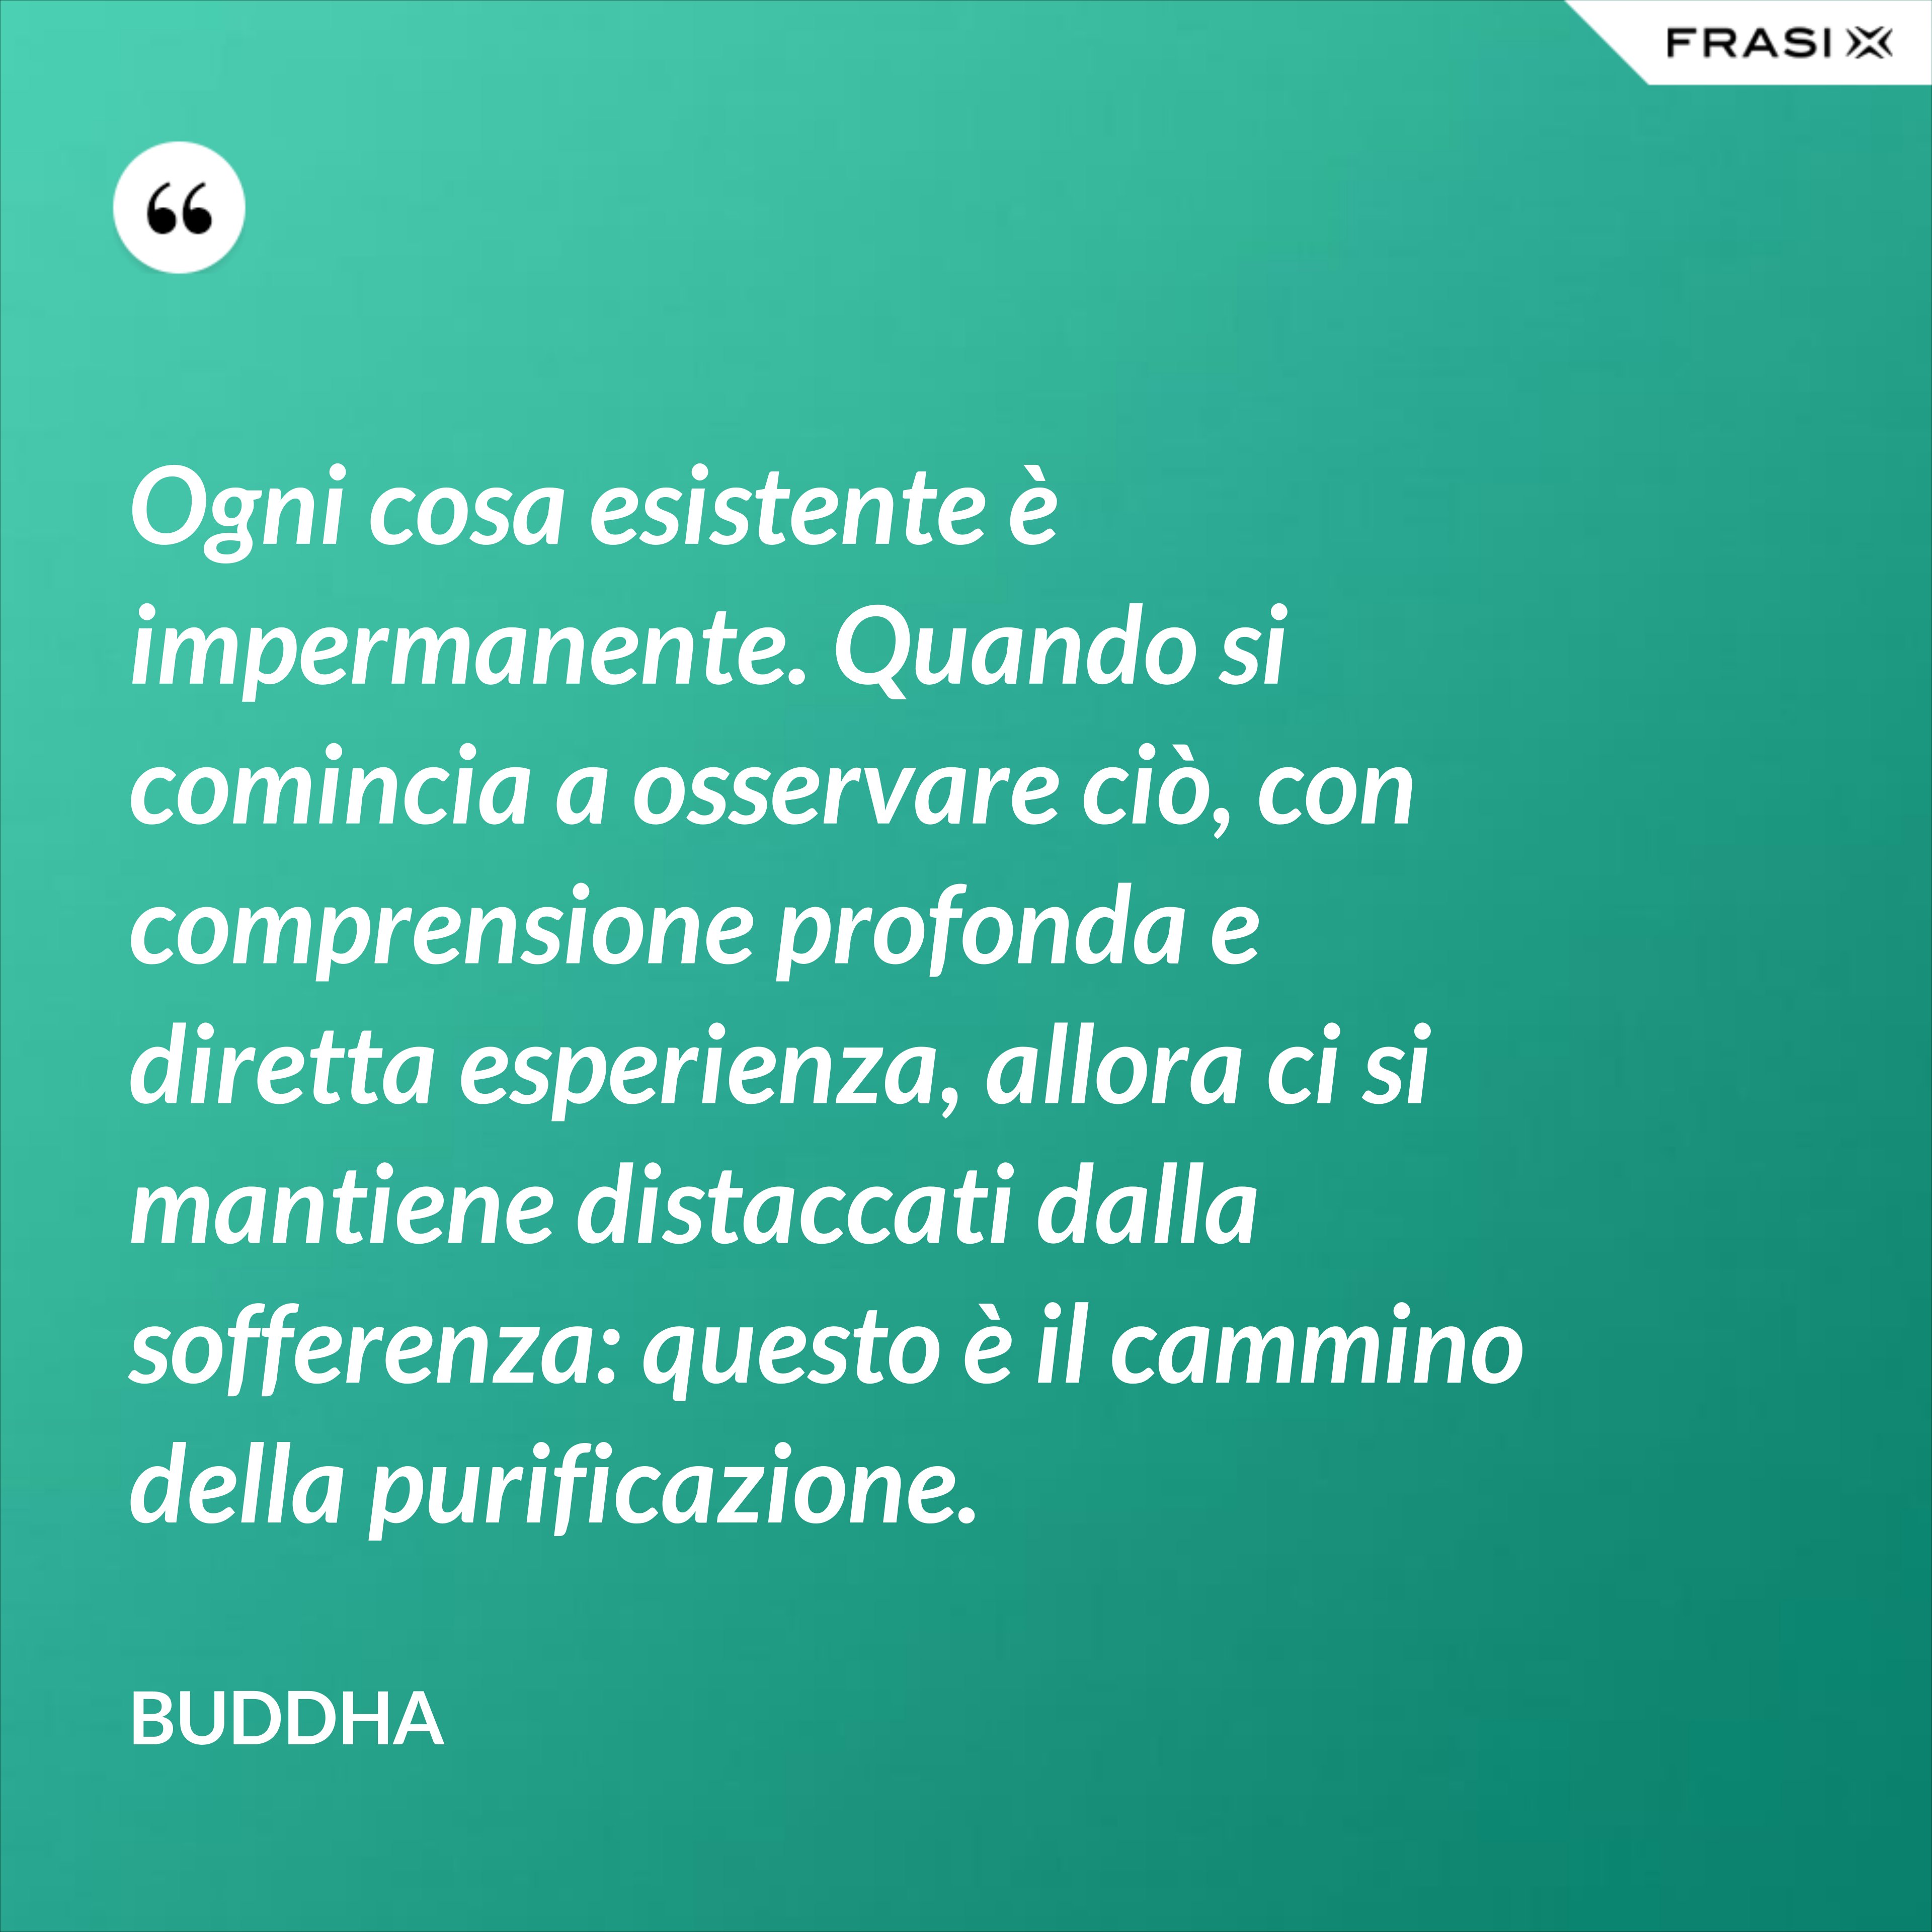 Ogni cosa esistente è impermanente. Quando si comincia a osservare ciò, con comprensione profonda e diretta esperienza, allora ci si mantiene distaccati dalla sofferenza: questo è il cammino della purificazione. - Buddha